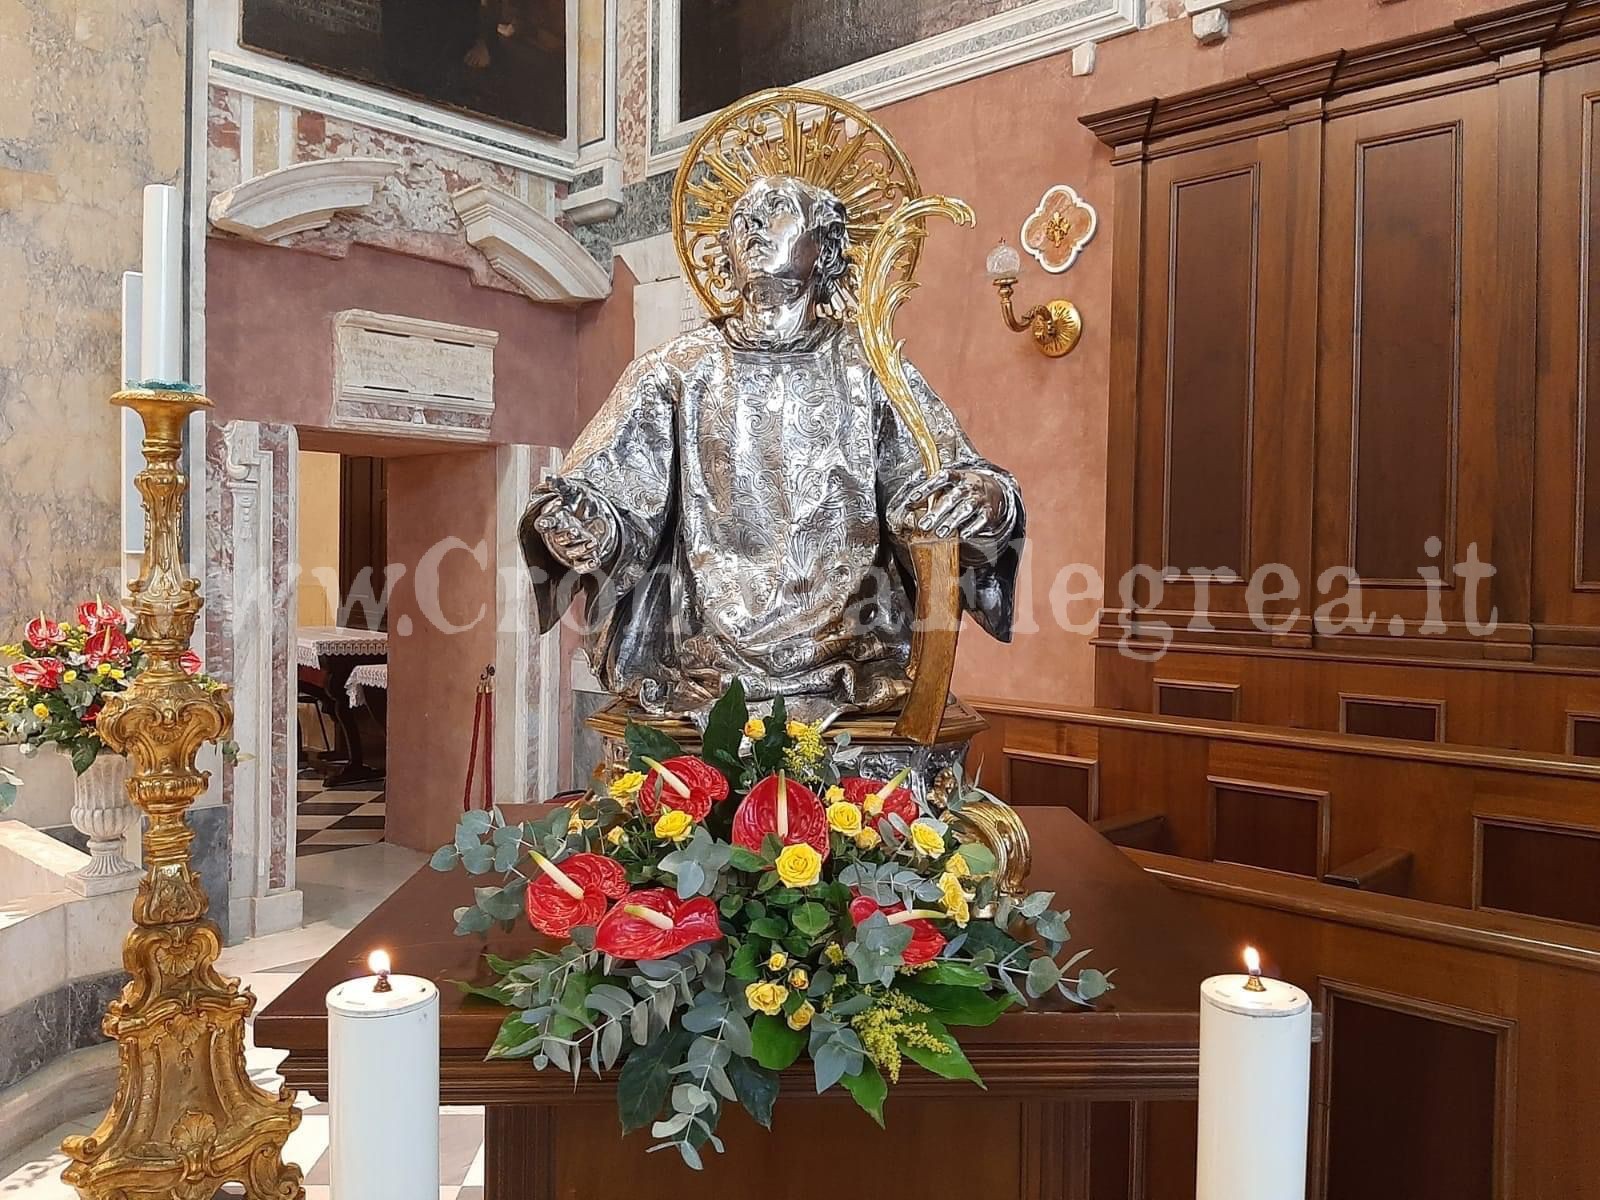 San Procolo, Pozzuoli si prepara a festeggiare il suo Patrono